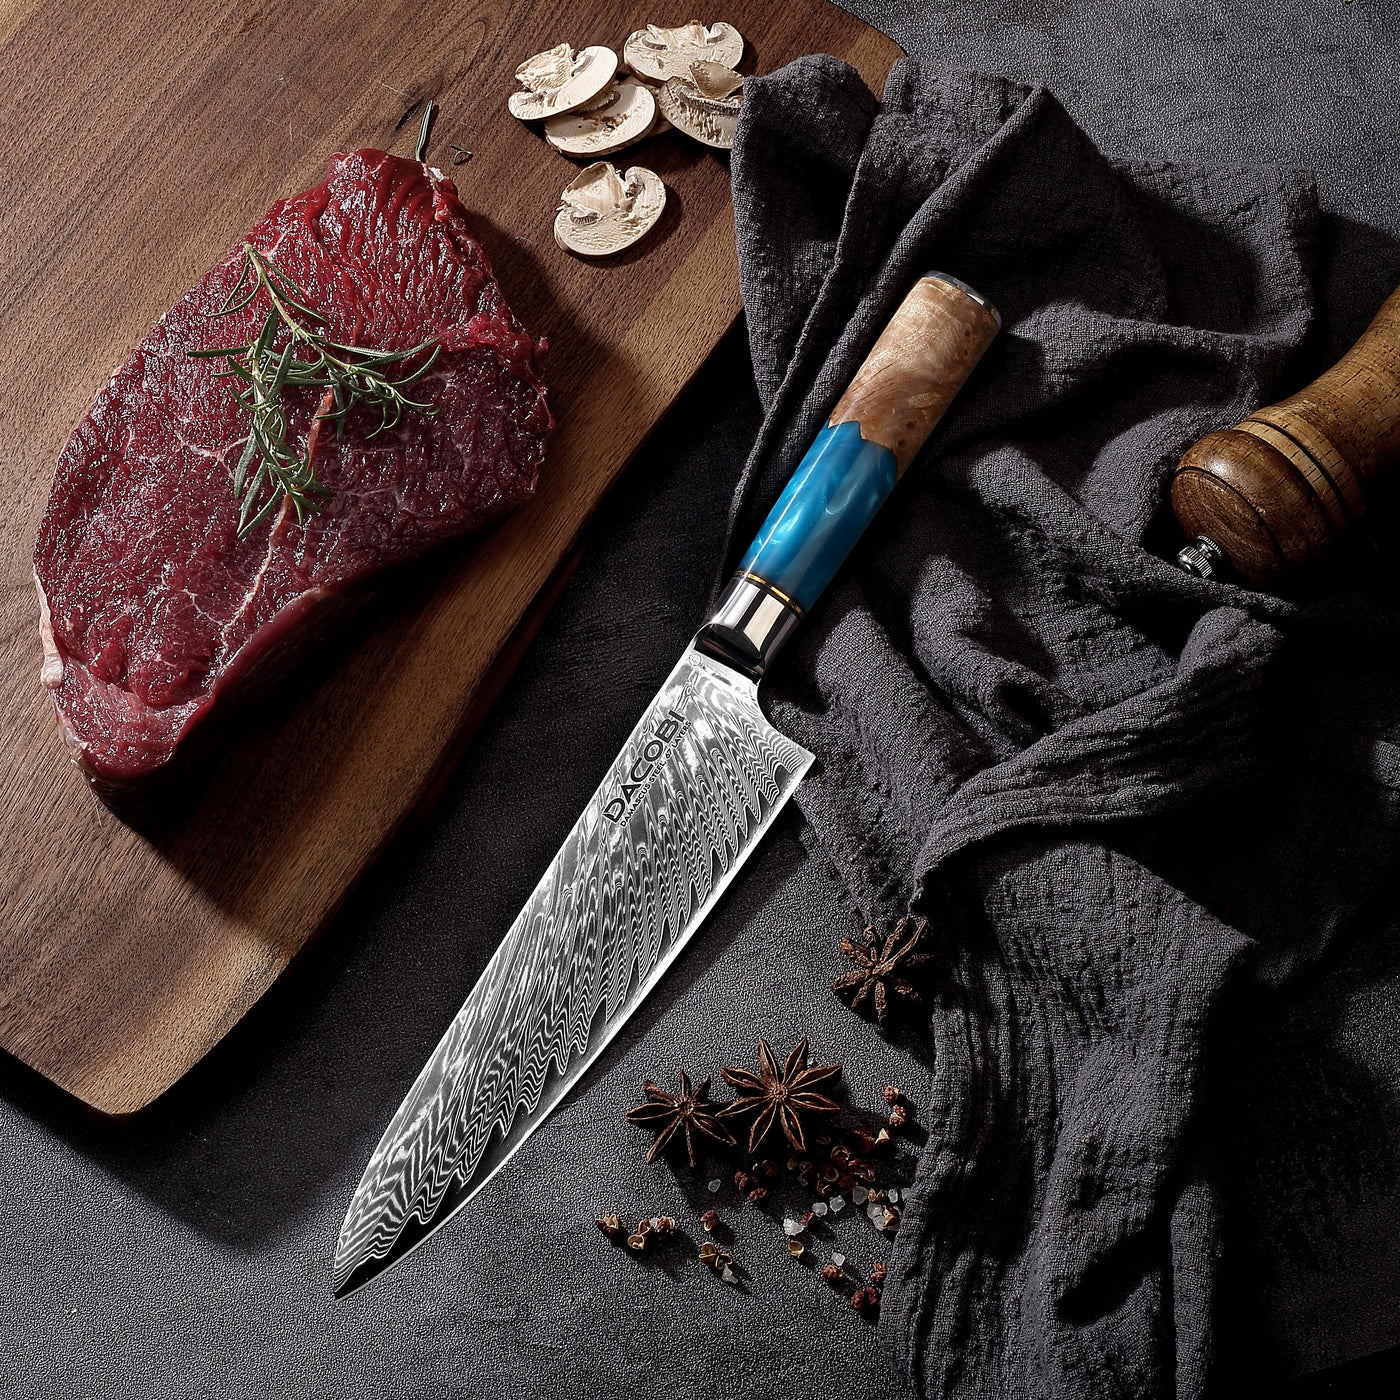 Cuțitul bucătarului, cuțit profesional, oțel damasc, mâner rășină și lemn, 20 cm (C1) - DACOBI.ro